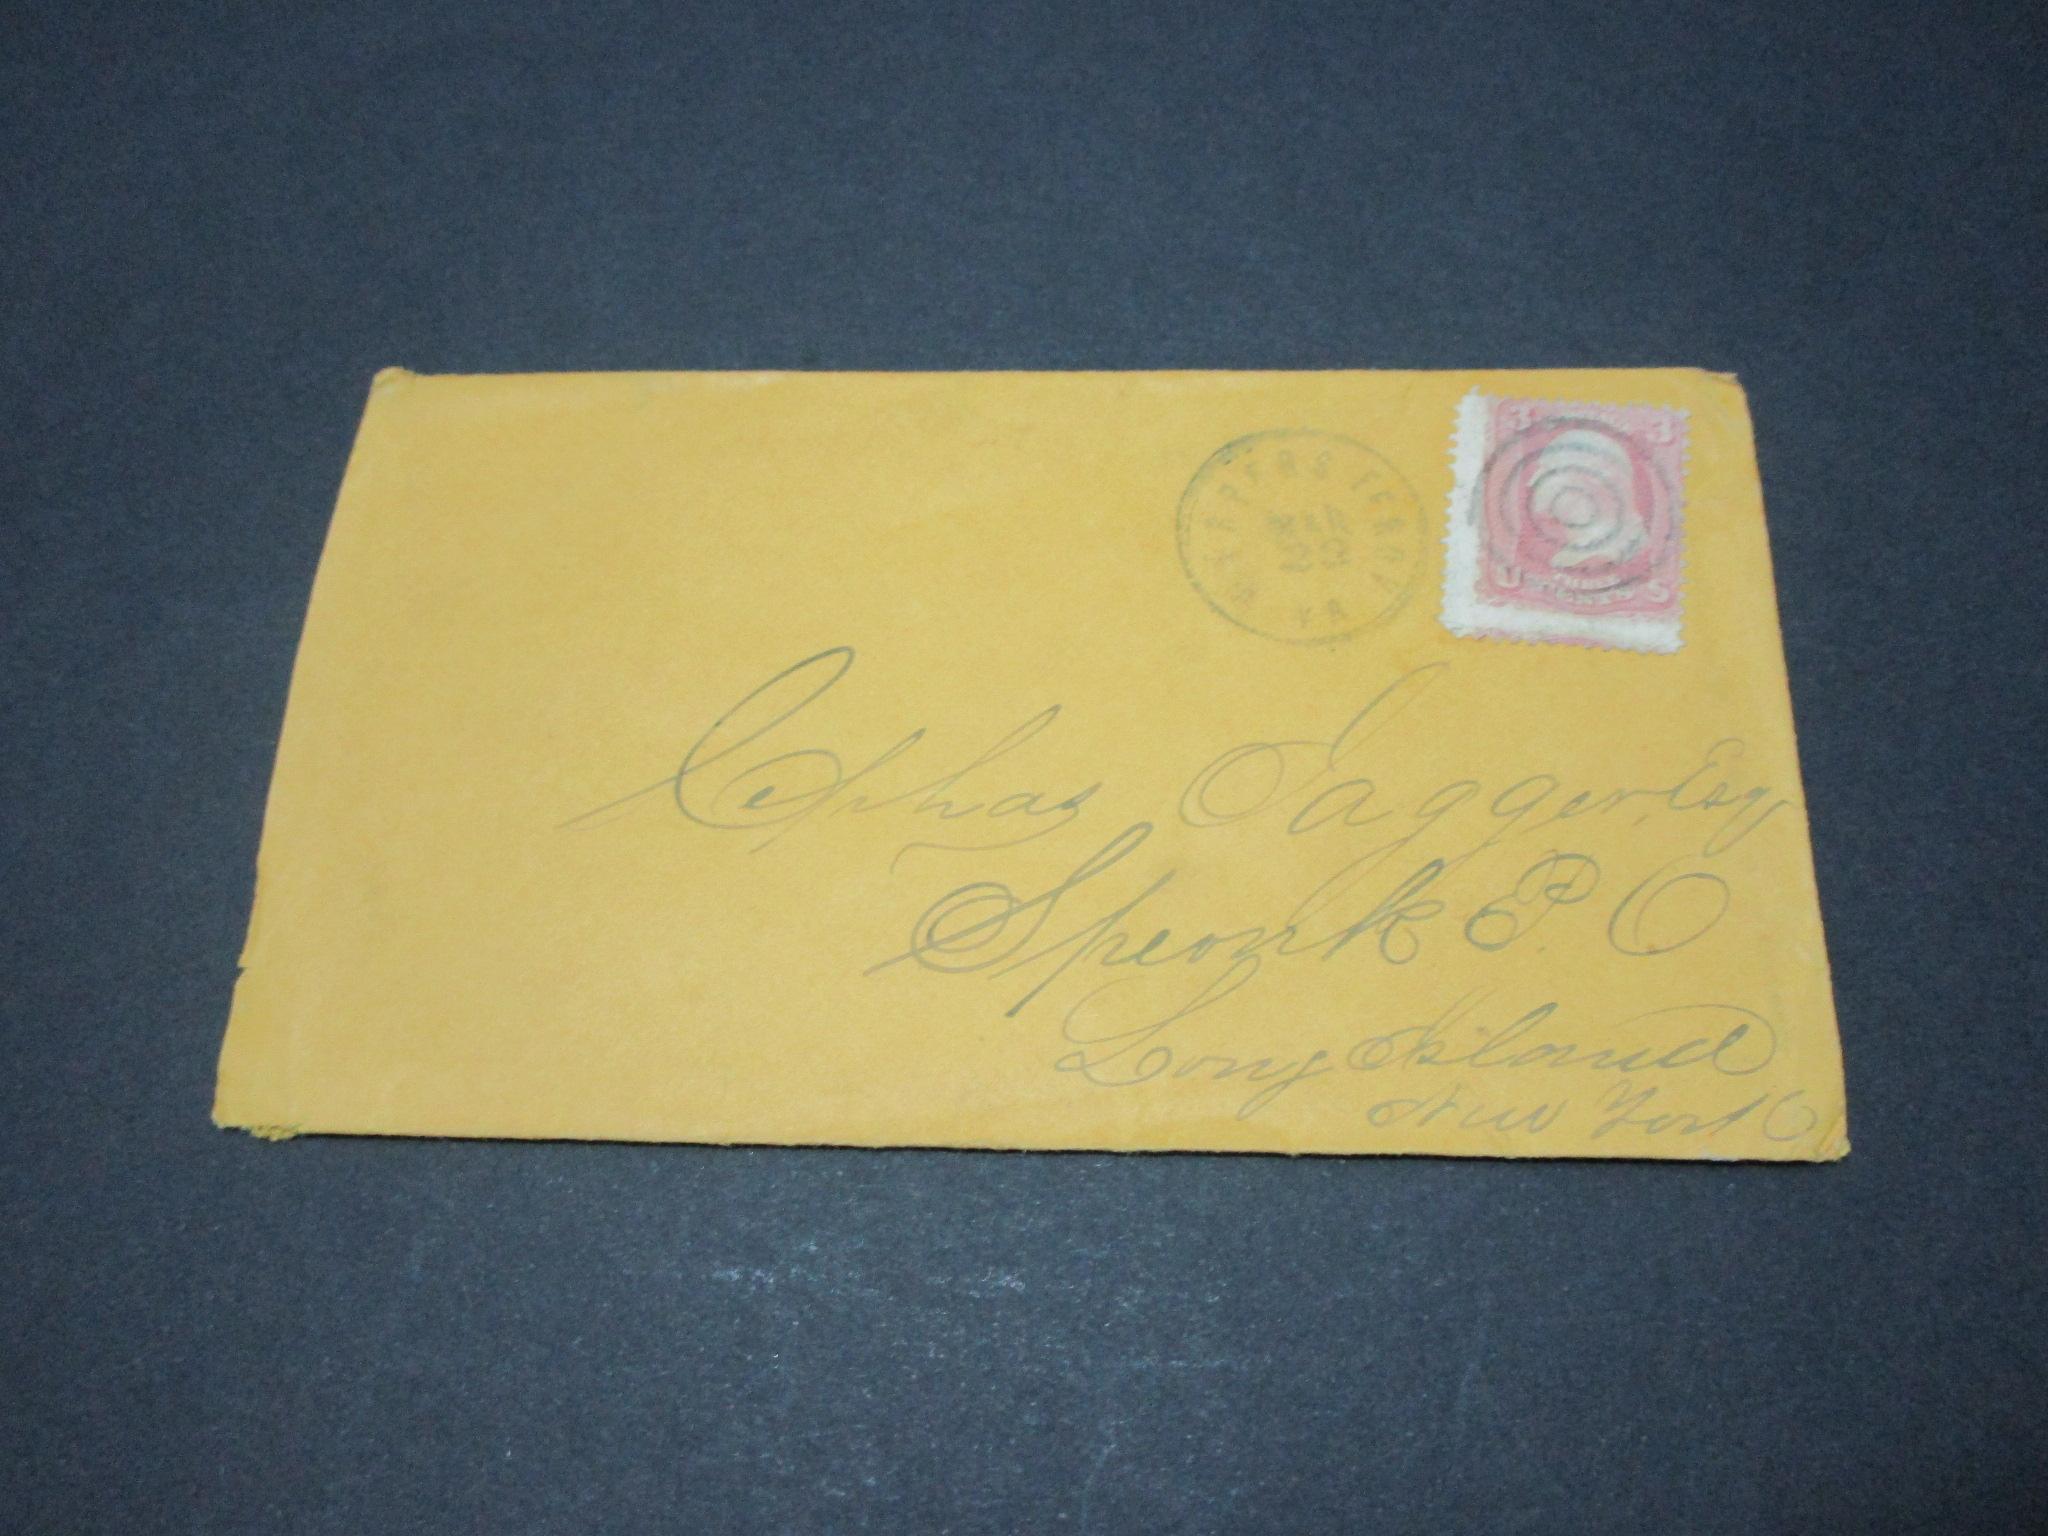 Scott 64 - Letter Postmarked Harpers Ferry, VA